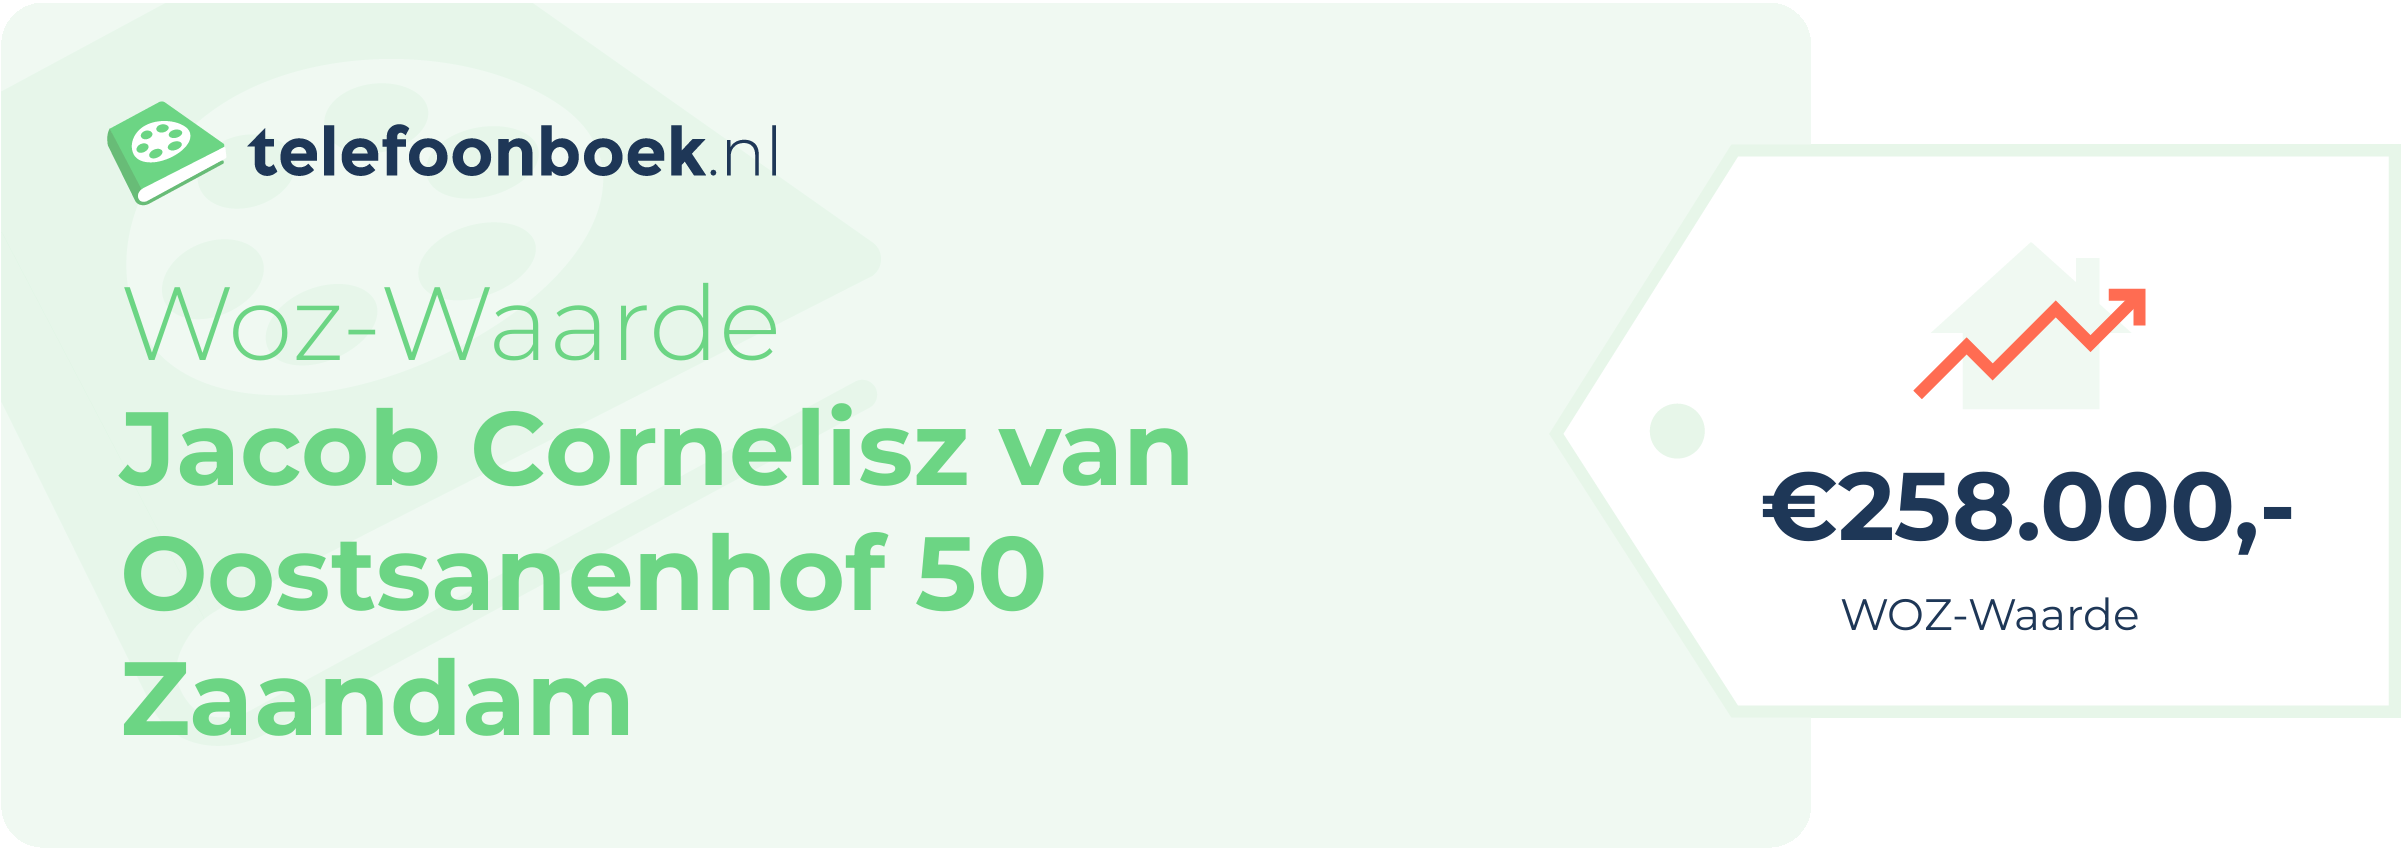 WOZ-waarde Jacob Cornelisz Van Oostsanenhof 50 Zaandam